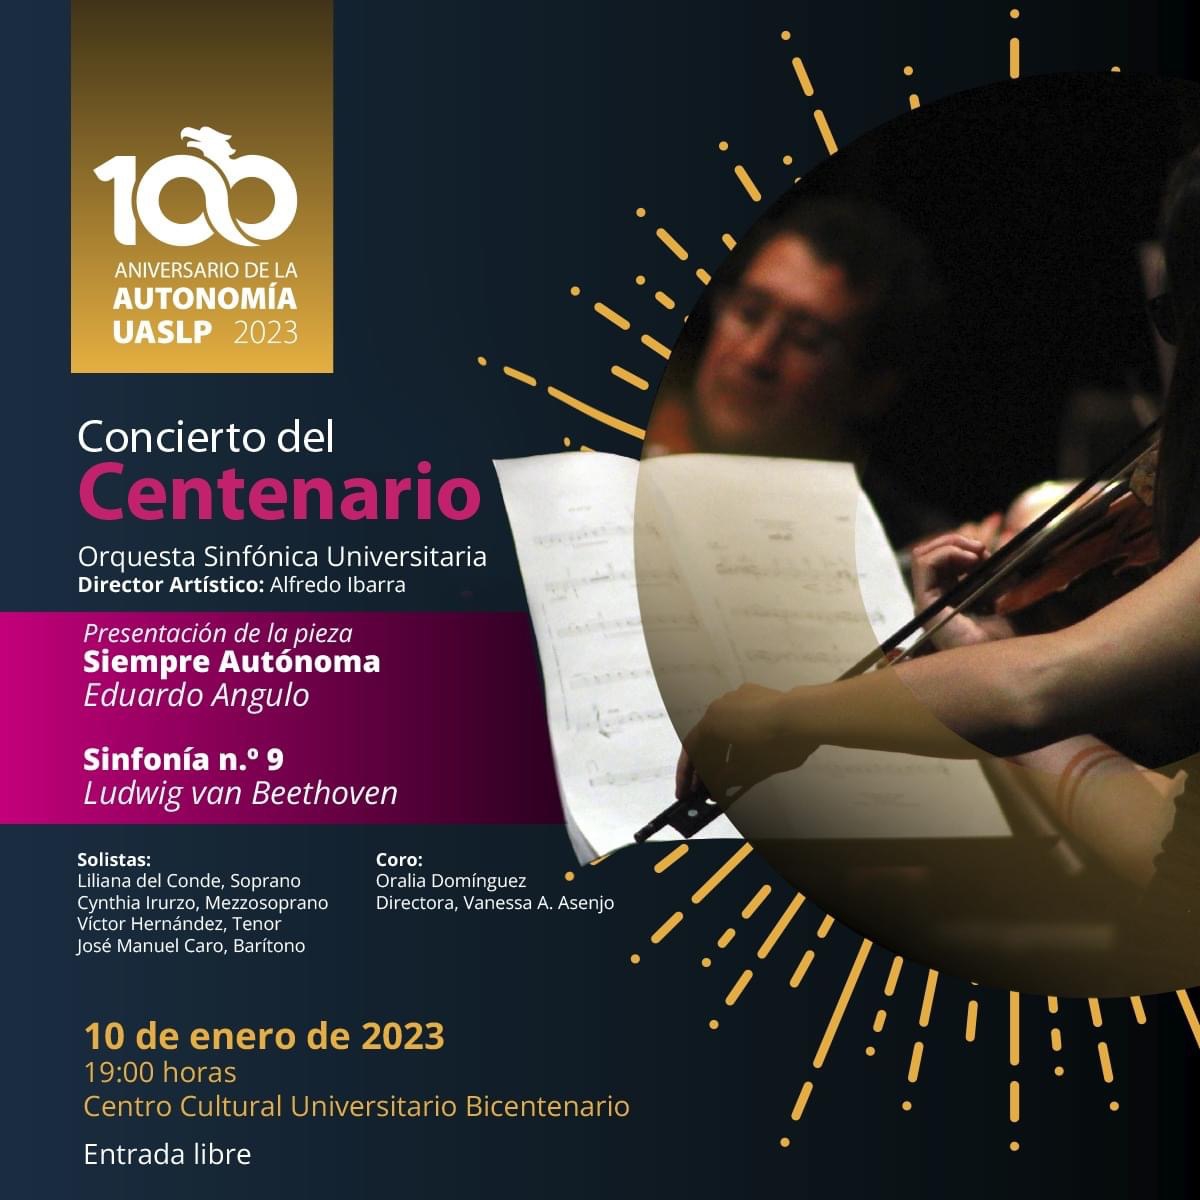 UASLP invita a la sociedad en general al Concierto del Centenario, que estará a cargo de la Orquesta Sinfónica Universitaria